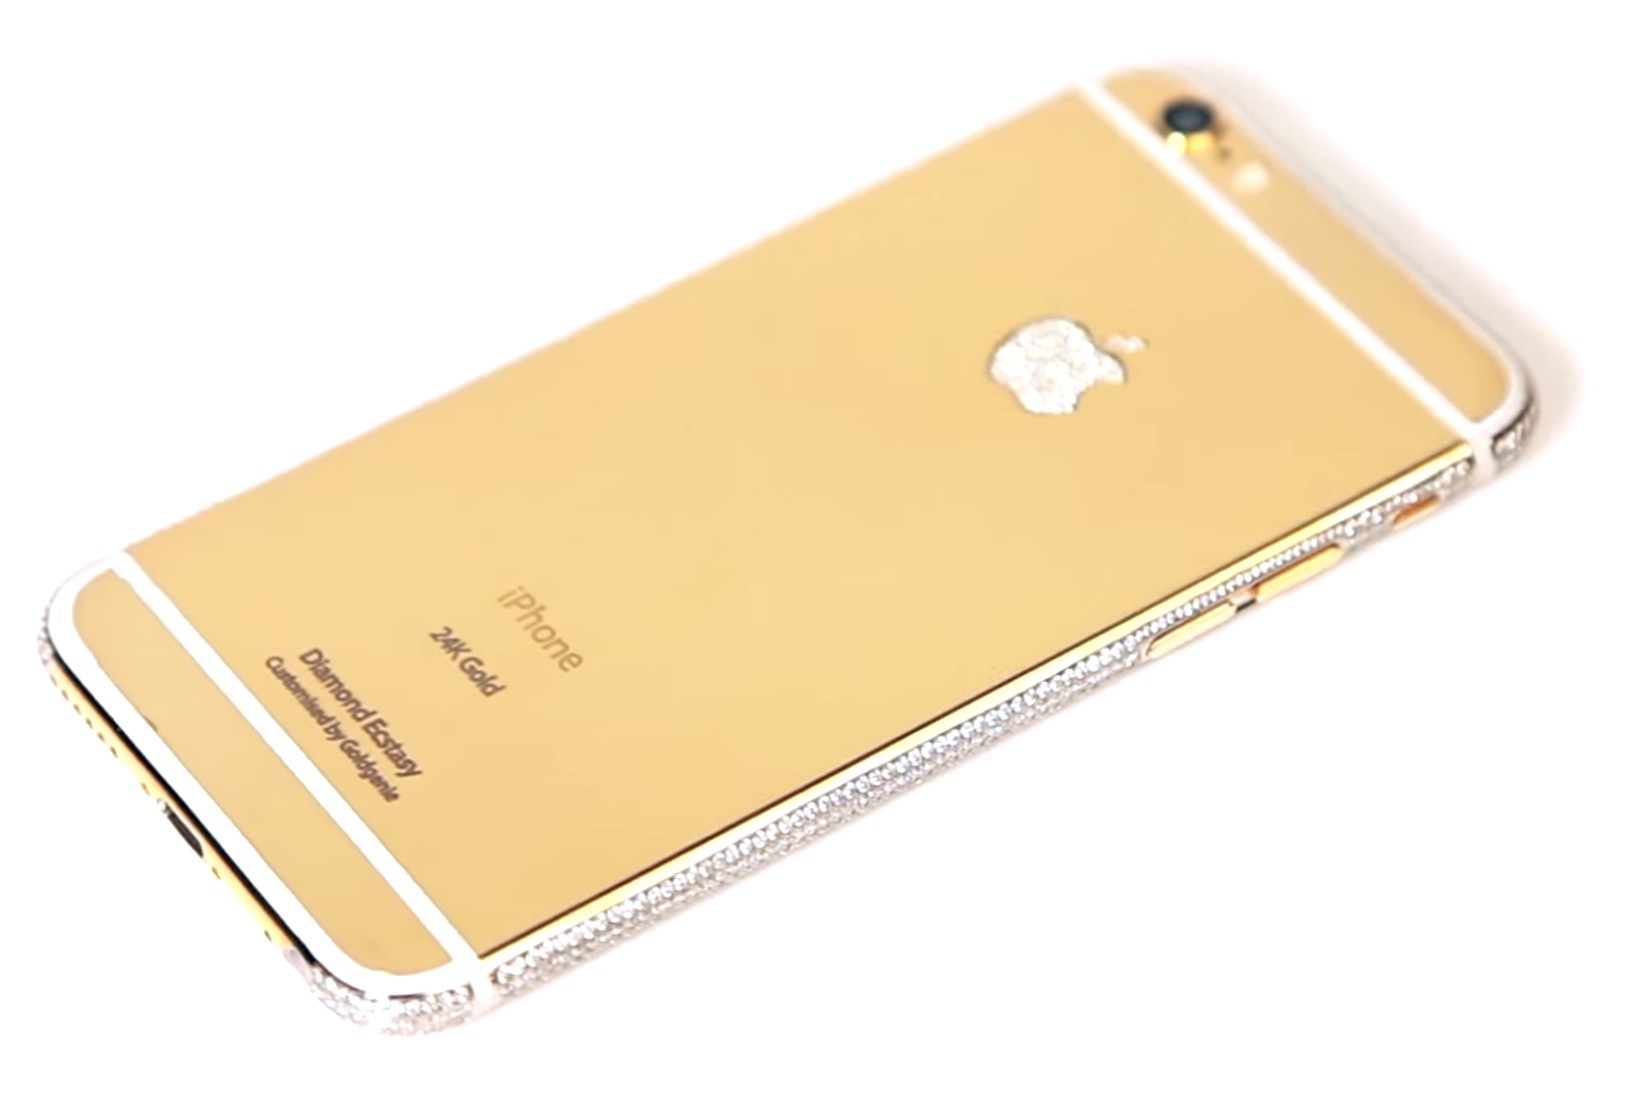 世界で最も高価な｢iPhone 6｣が登場 − お値段なんと4.2億円也